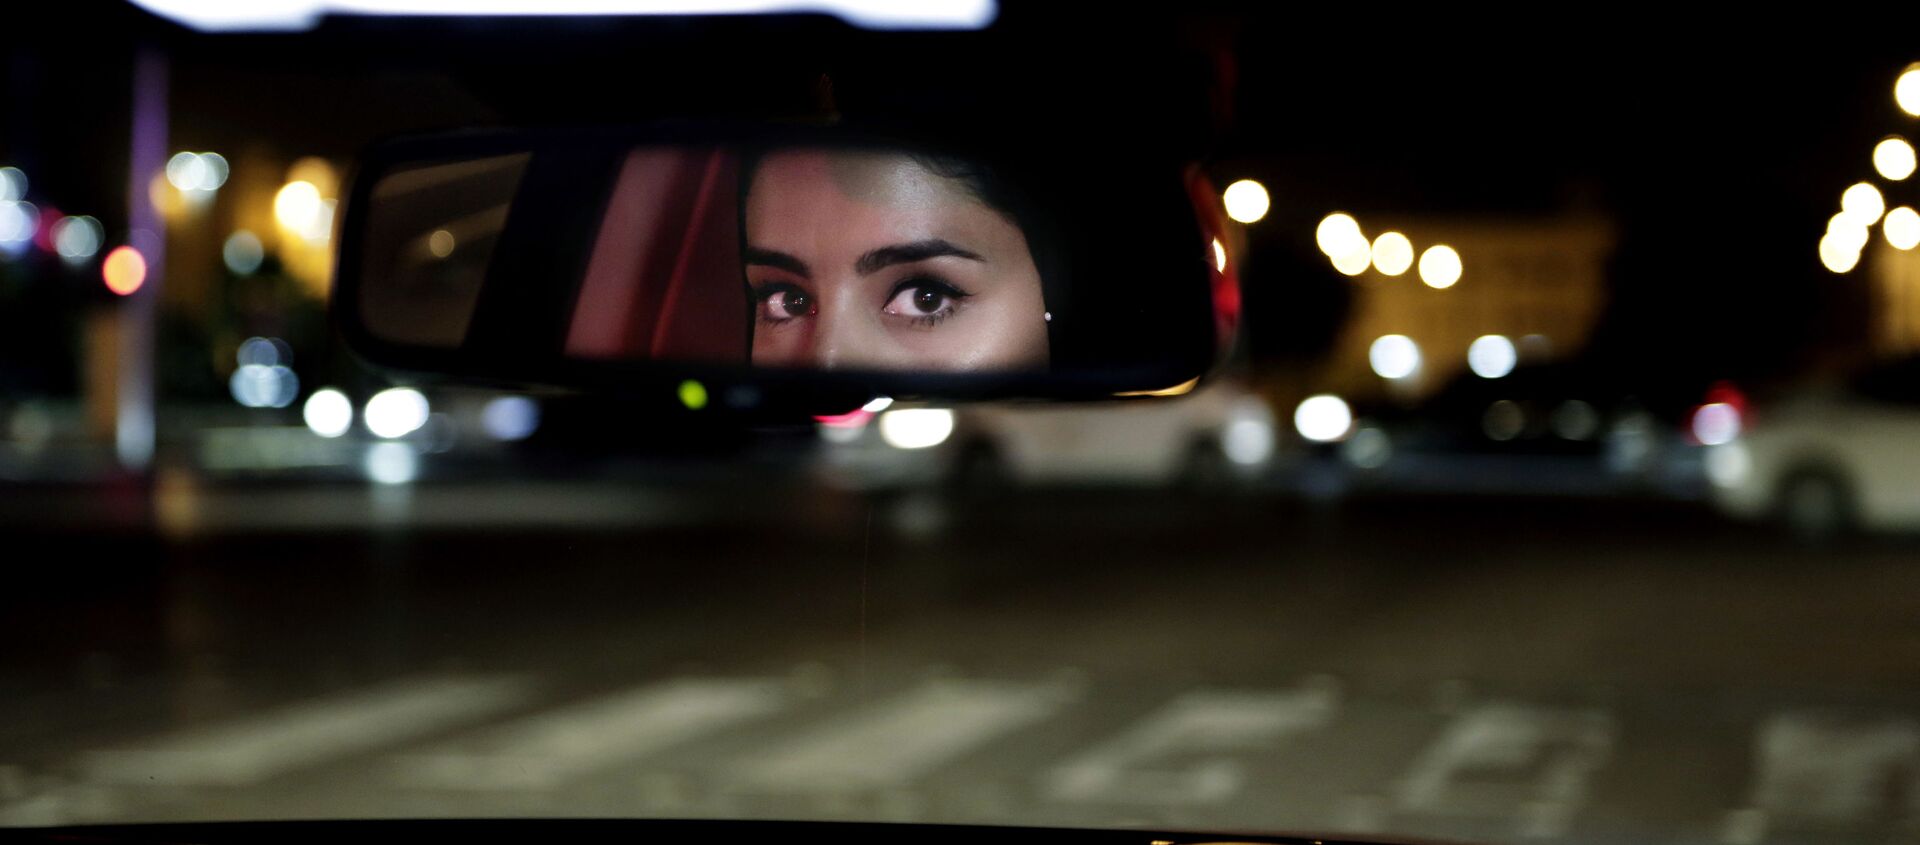 Глаза девушки в зеркале заднего вида машины в Саудовской Аравии  - Sputnik Таджикистан, 1920, 18.11.2020